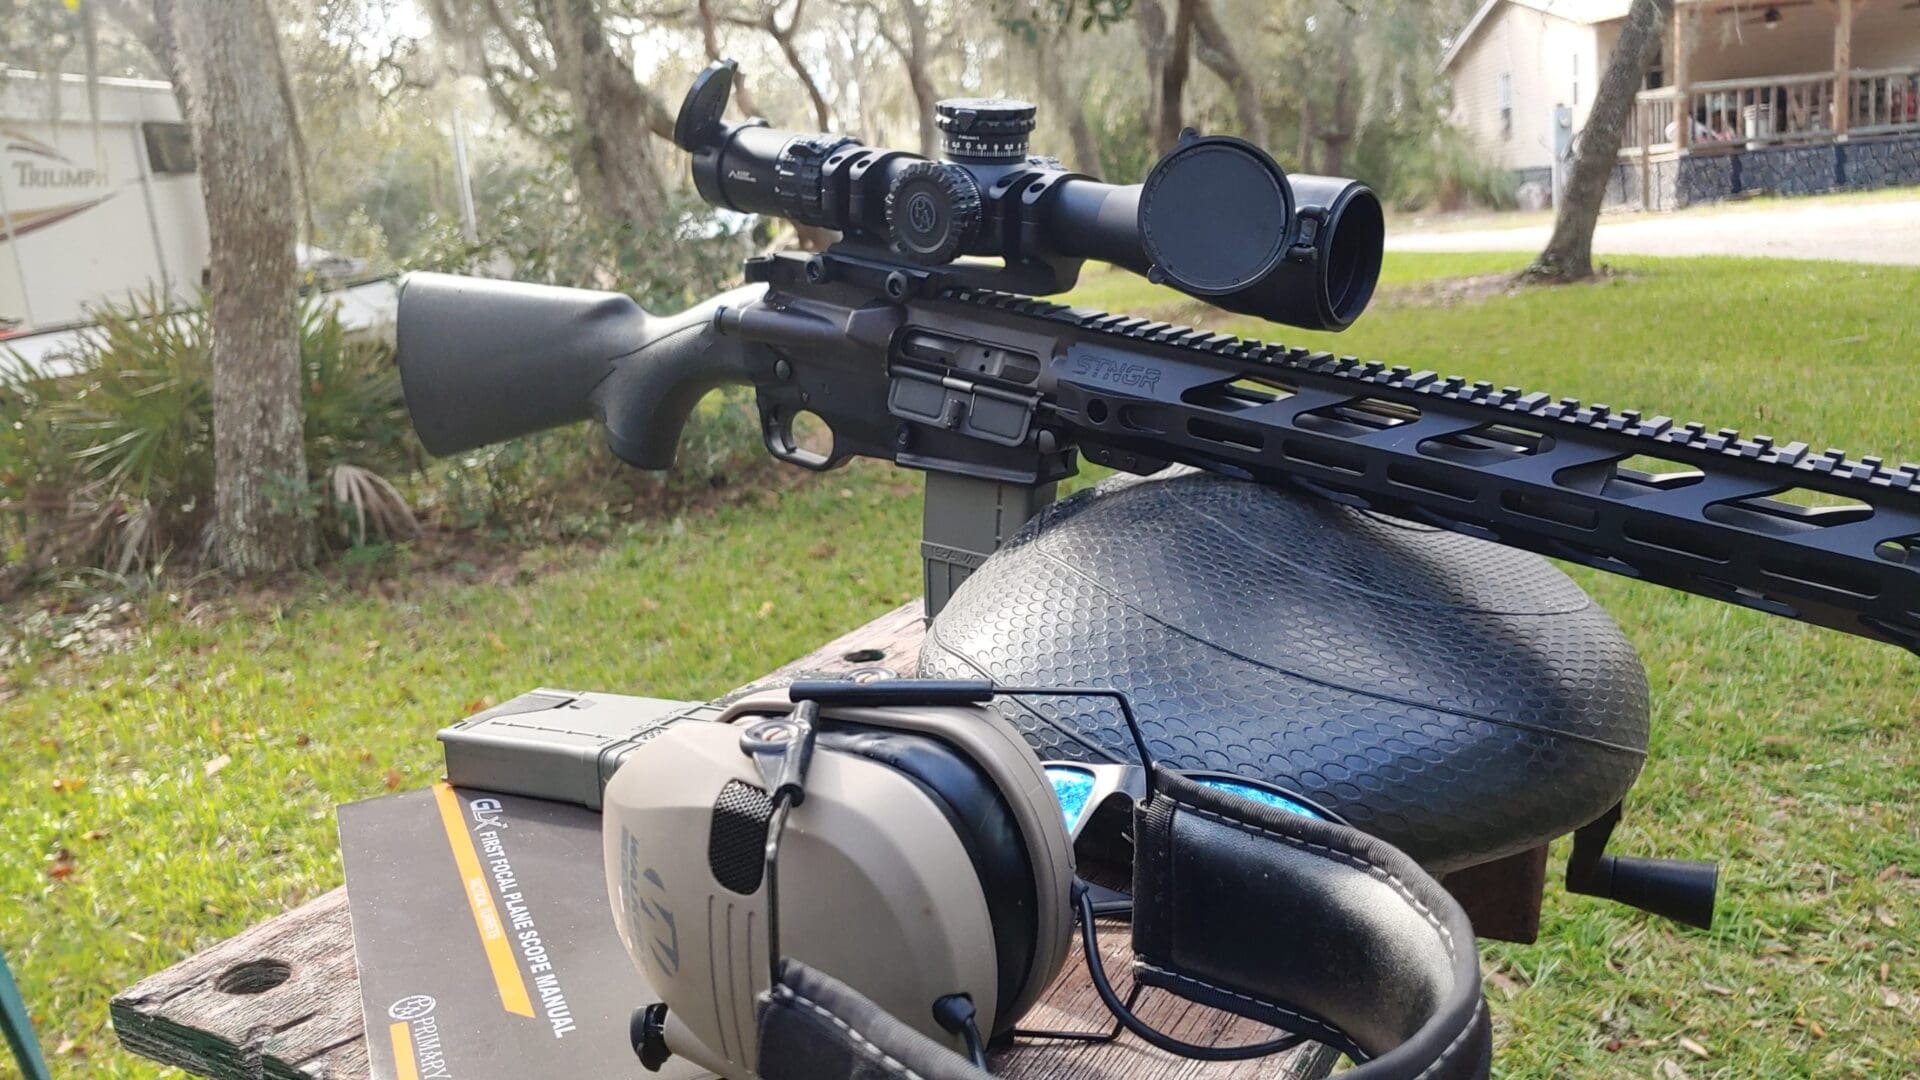 Primary Arms GLX 2.5-10x44 Rifle Scope